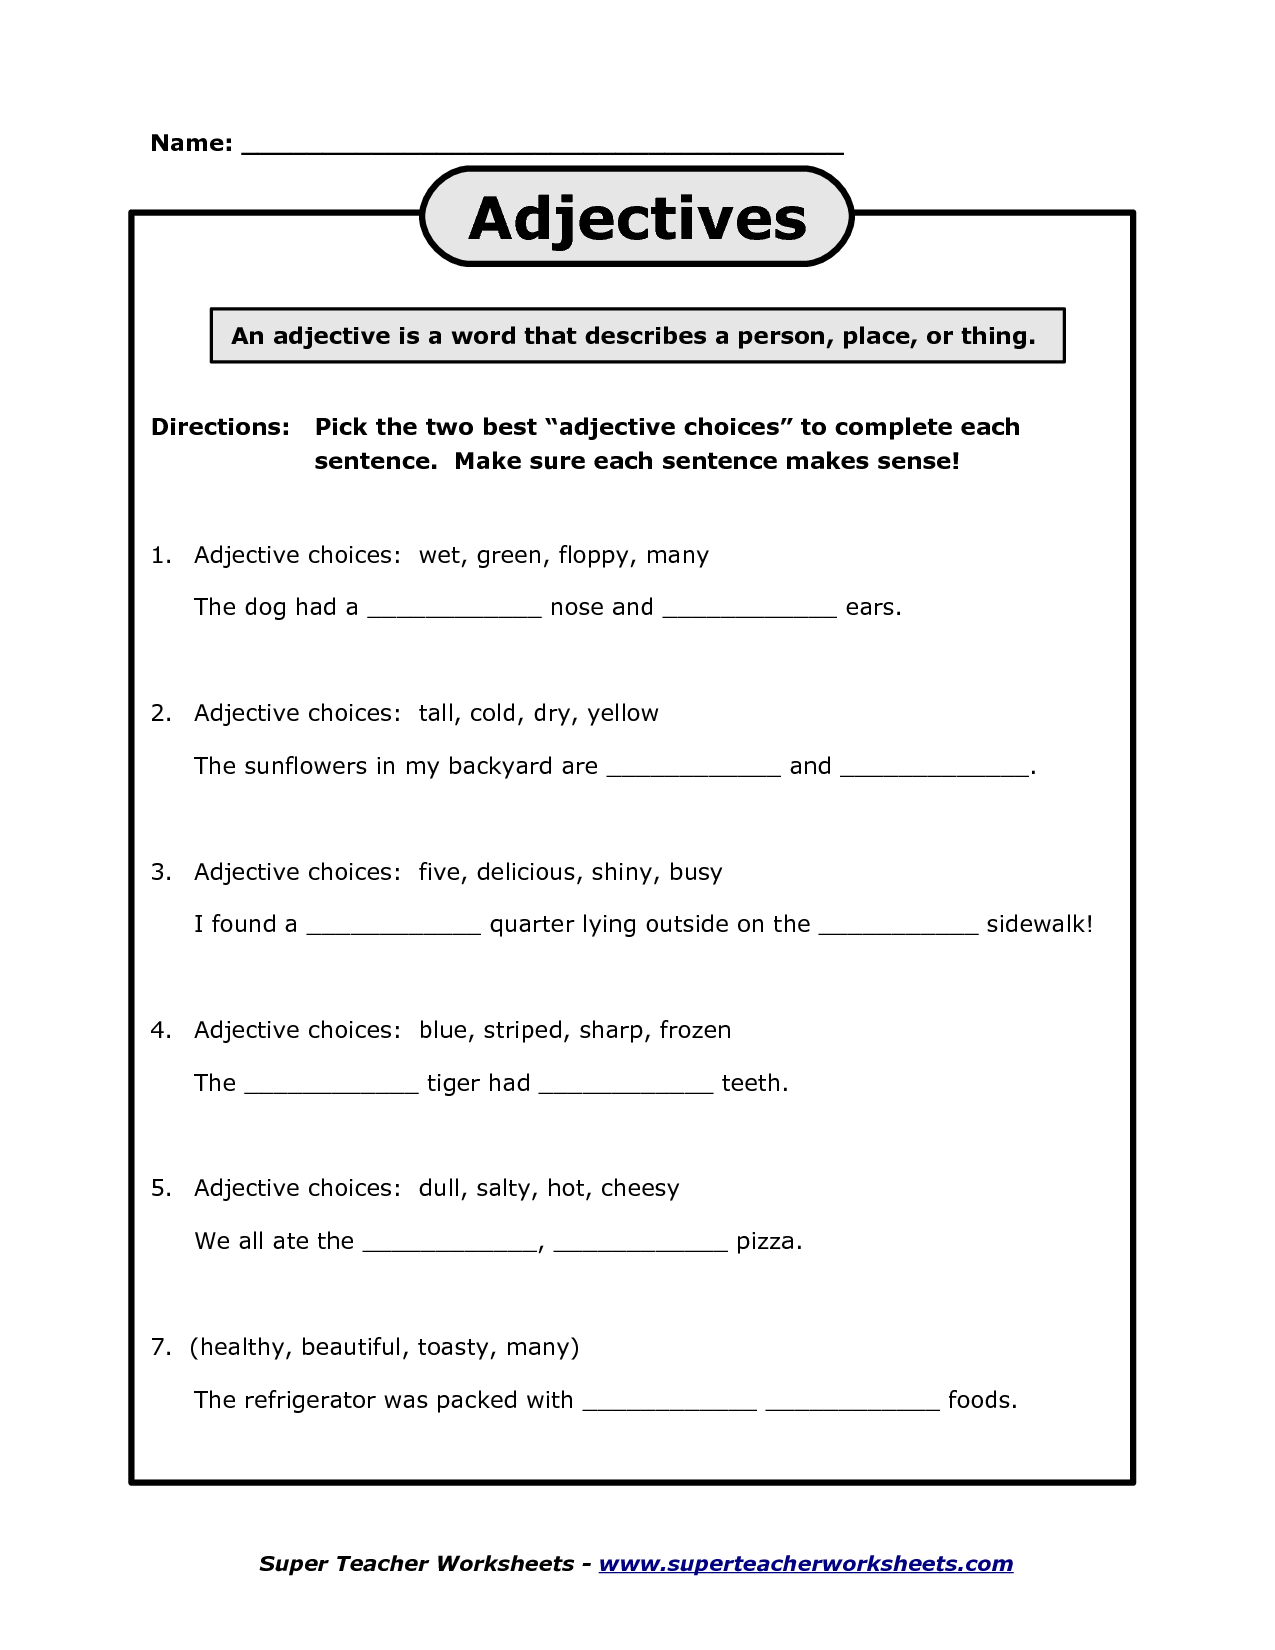 Adjective Order Worksheets